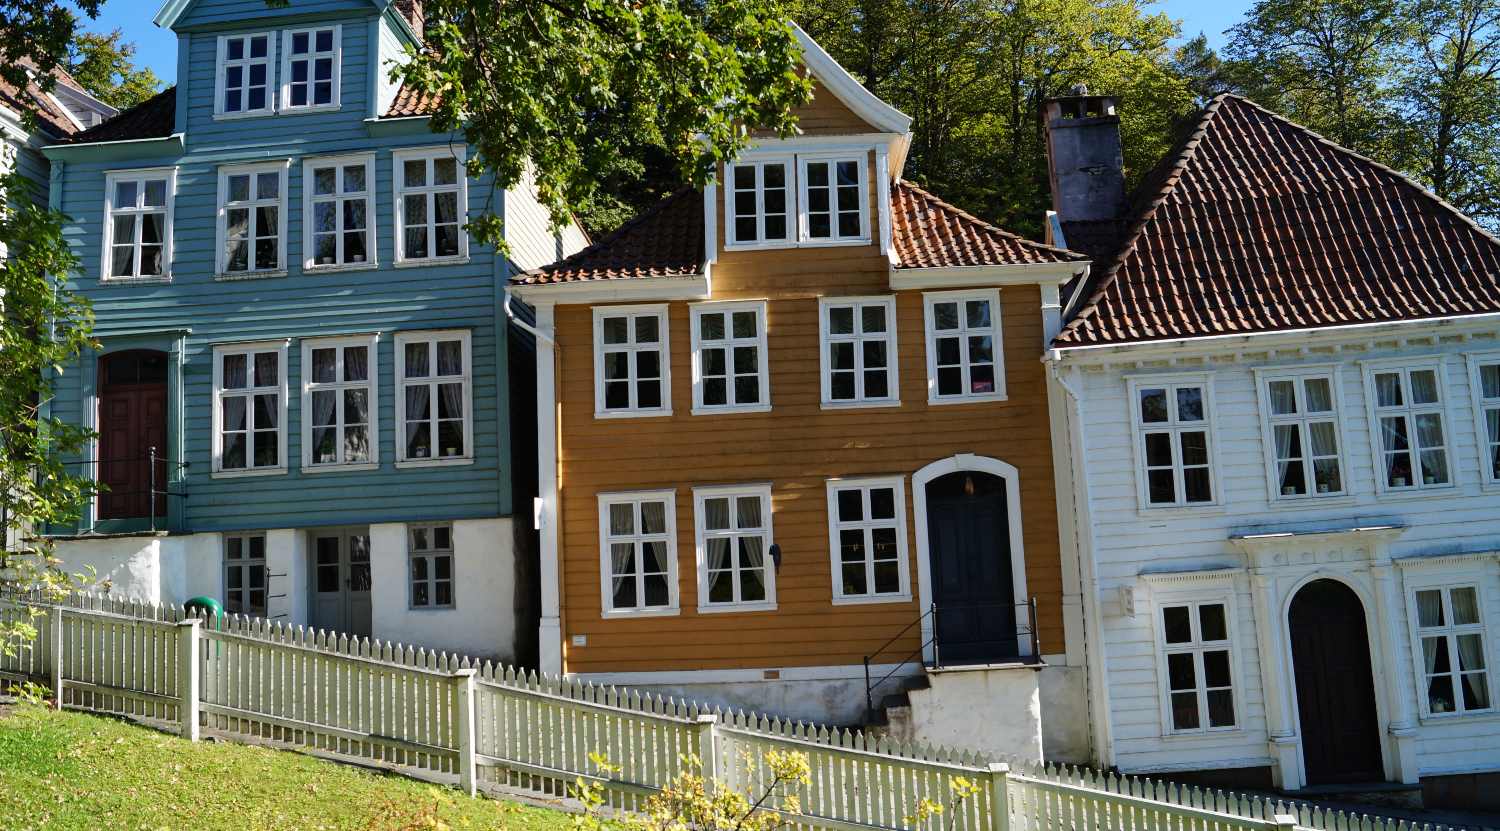 Wooden houses in Bergen